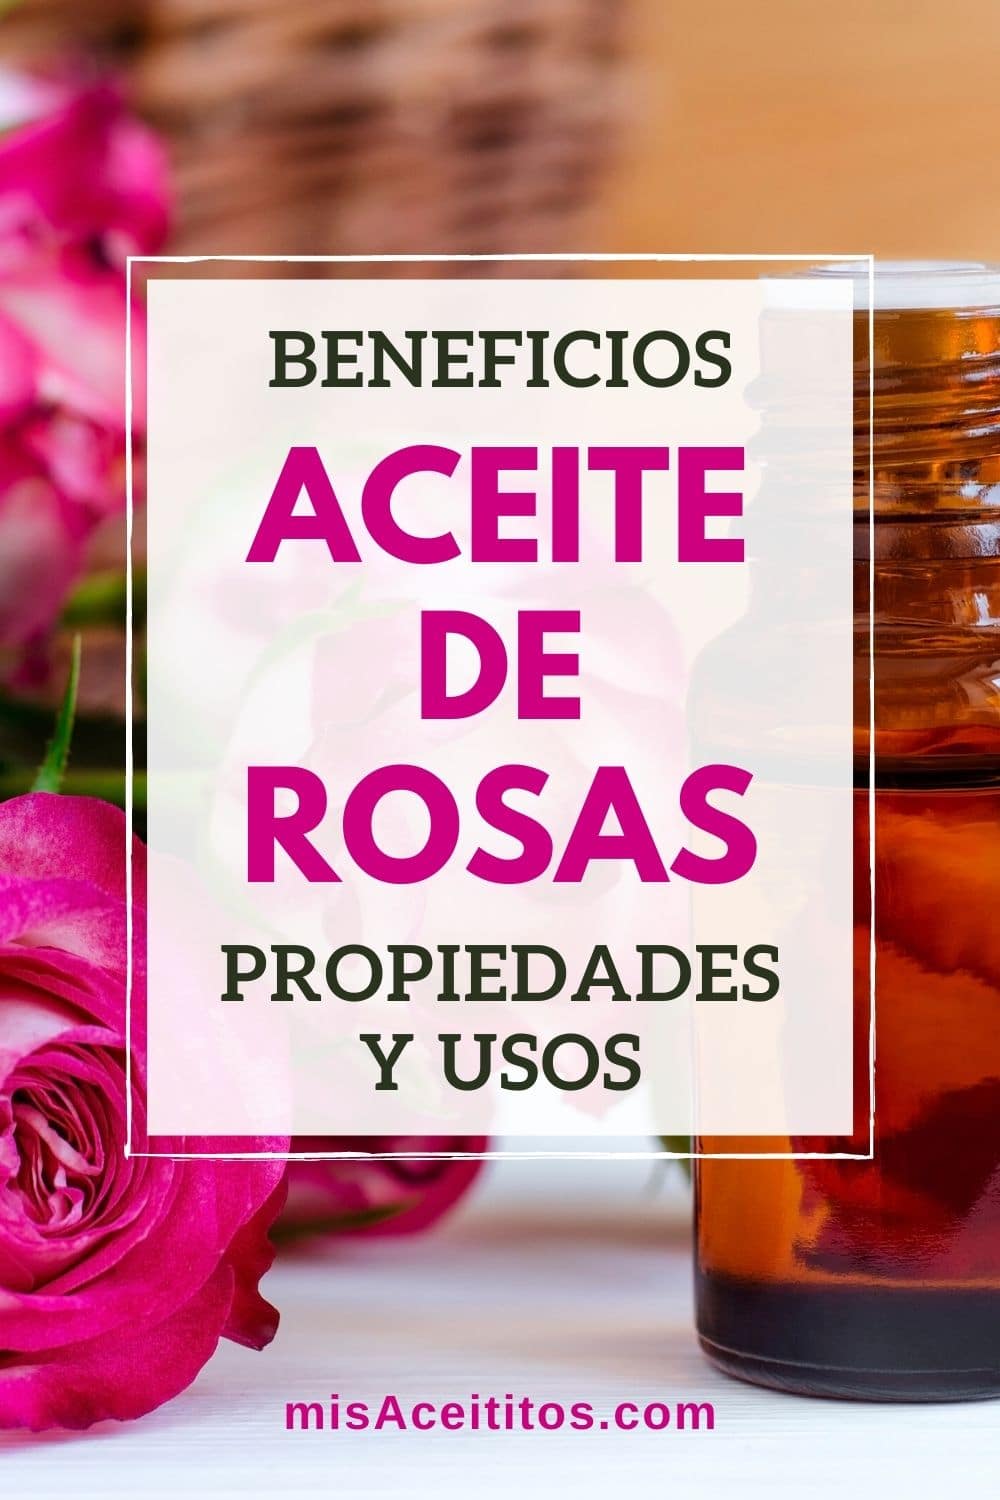 Beneficios, propiedades y usos del aceite de rosas.